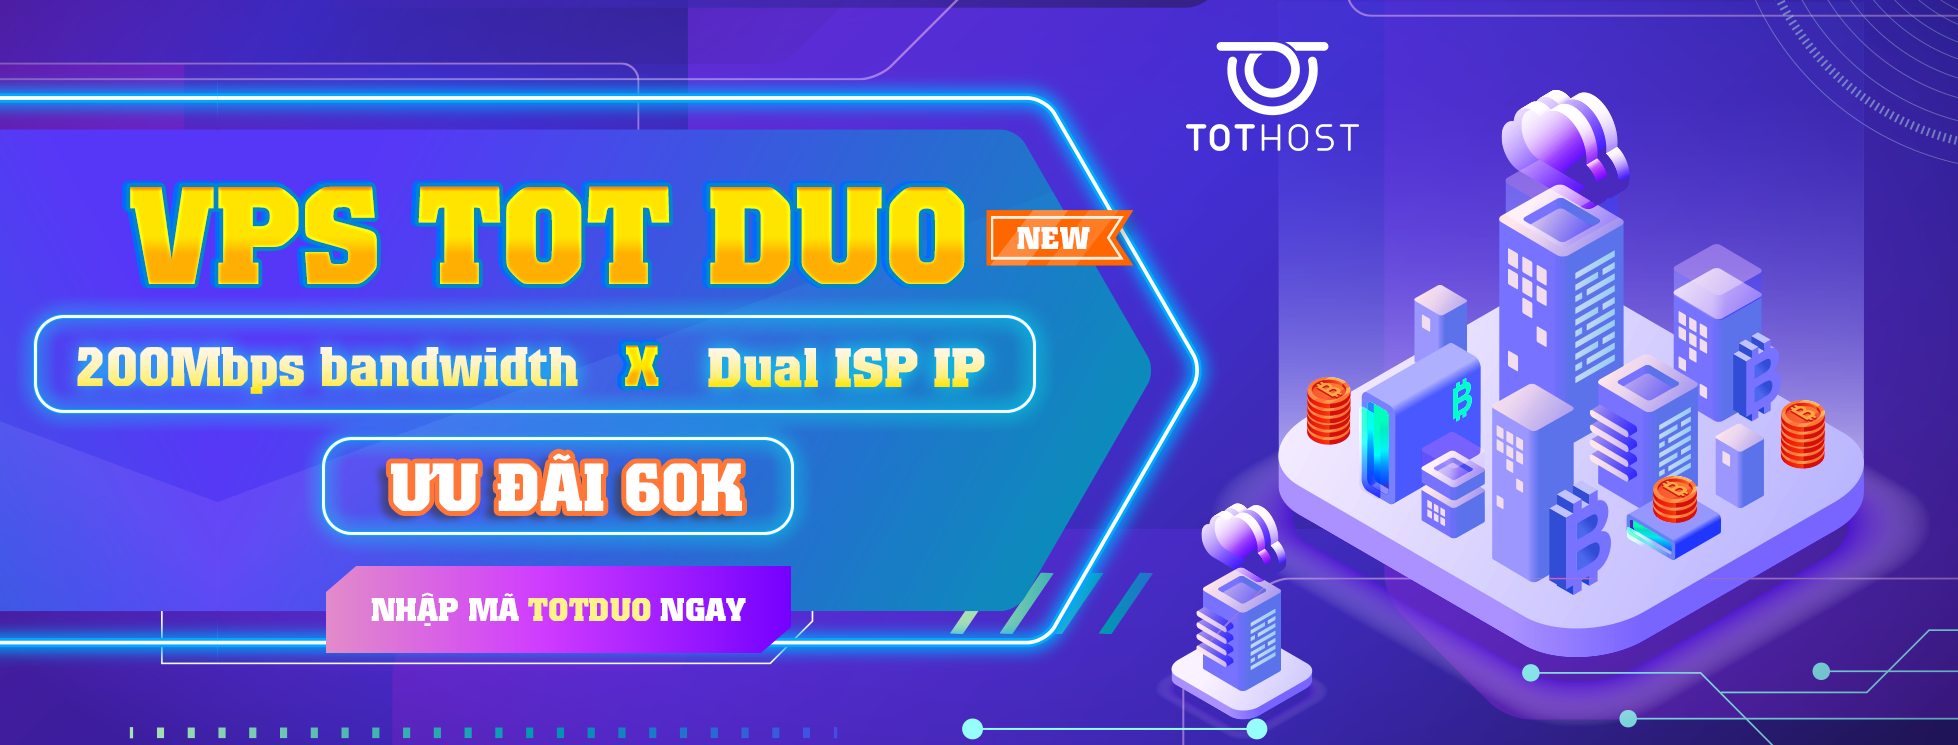 Đón TOT DUO - Cua code xịn: Ưu đãi 60K khi mua VPS TOT Duo